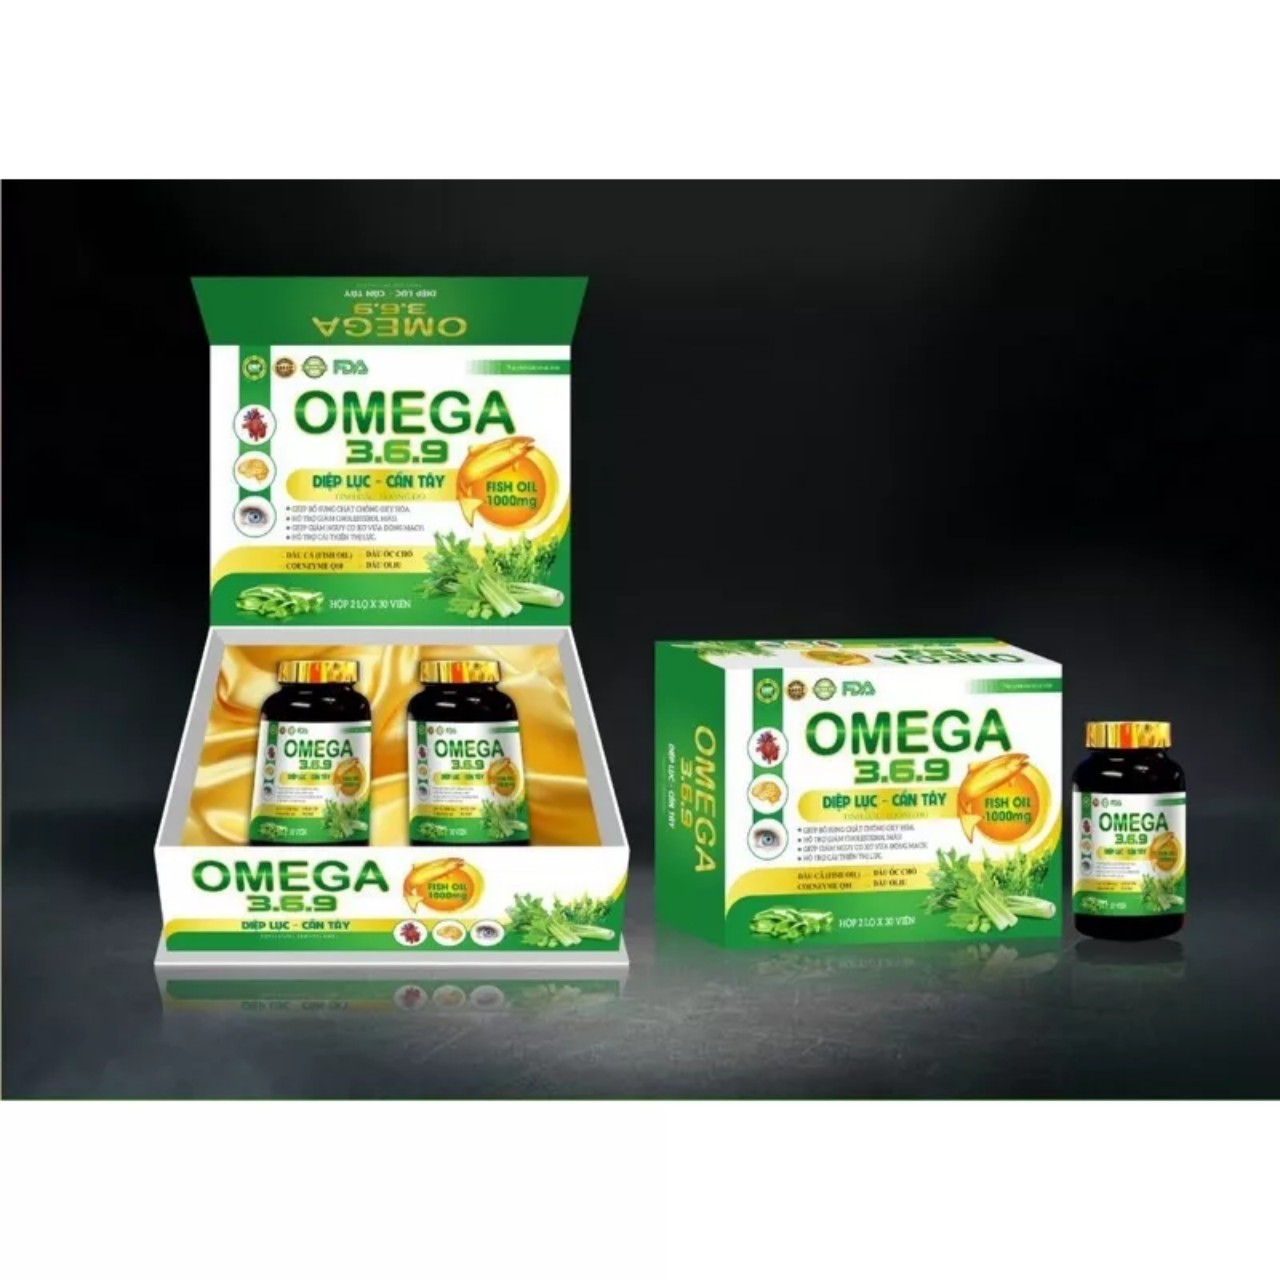 Omega 369 Diệp lục cần tây tinh dầu thông đỏ giúp tăng thị lực